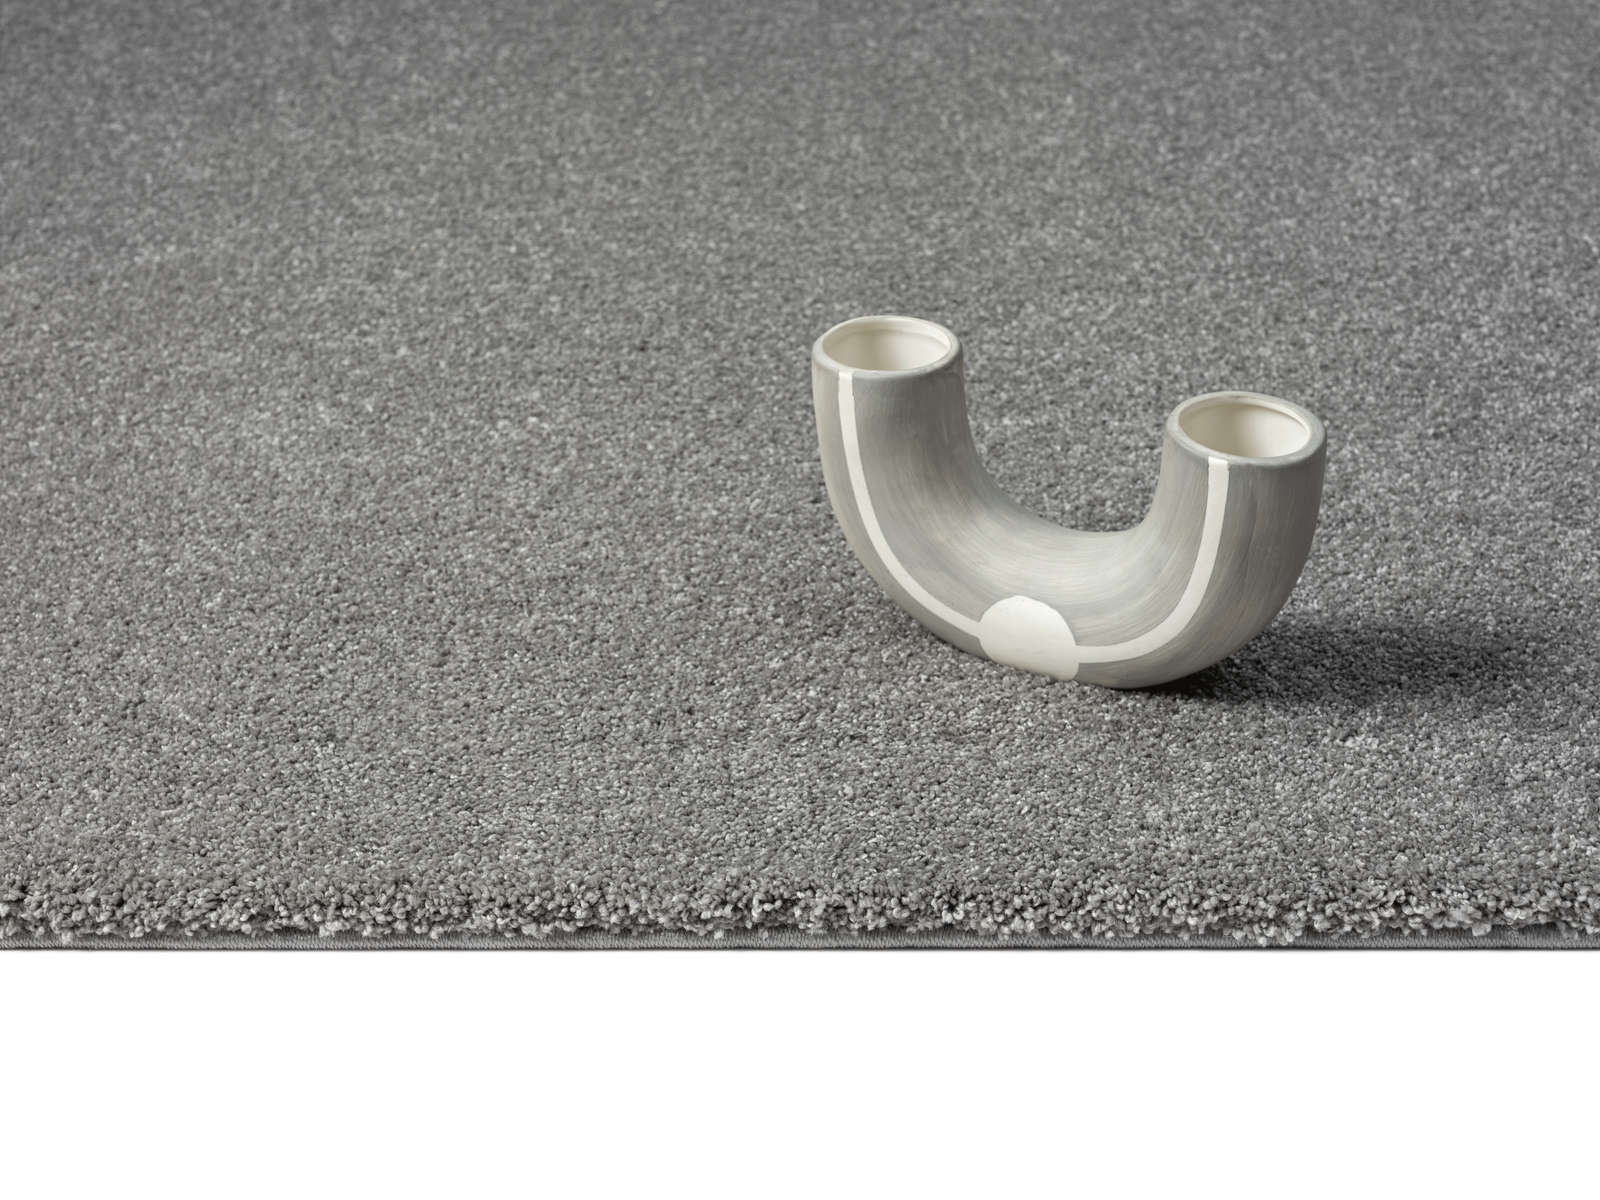             Flauschiger Kurzflor Teppich in Grau – 200 x 140 cm
        